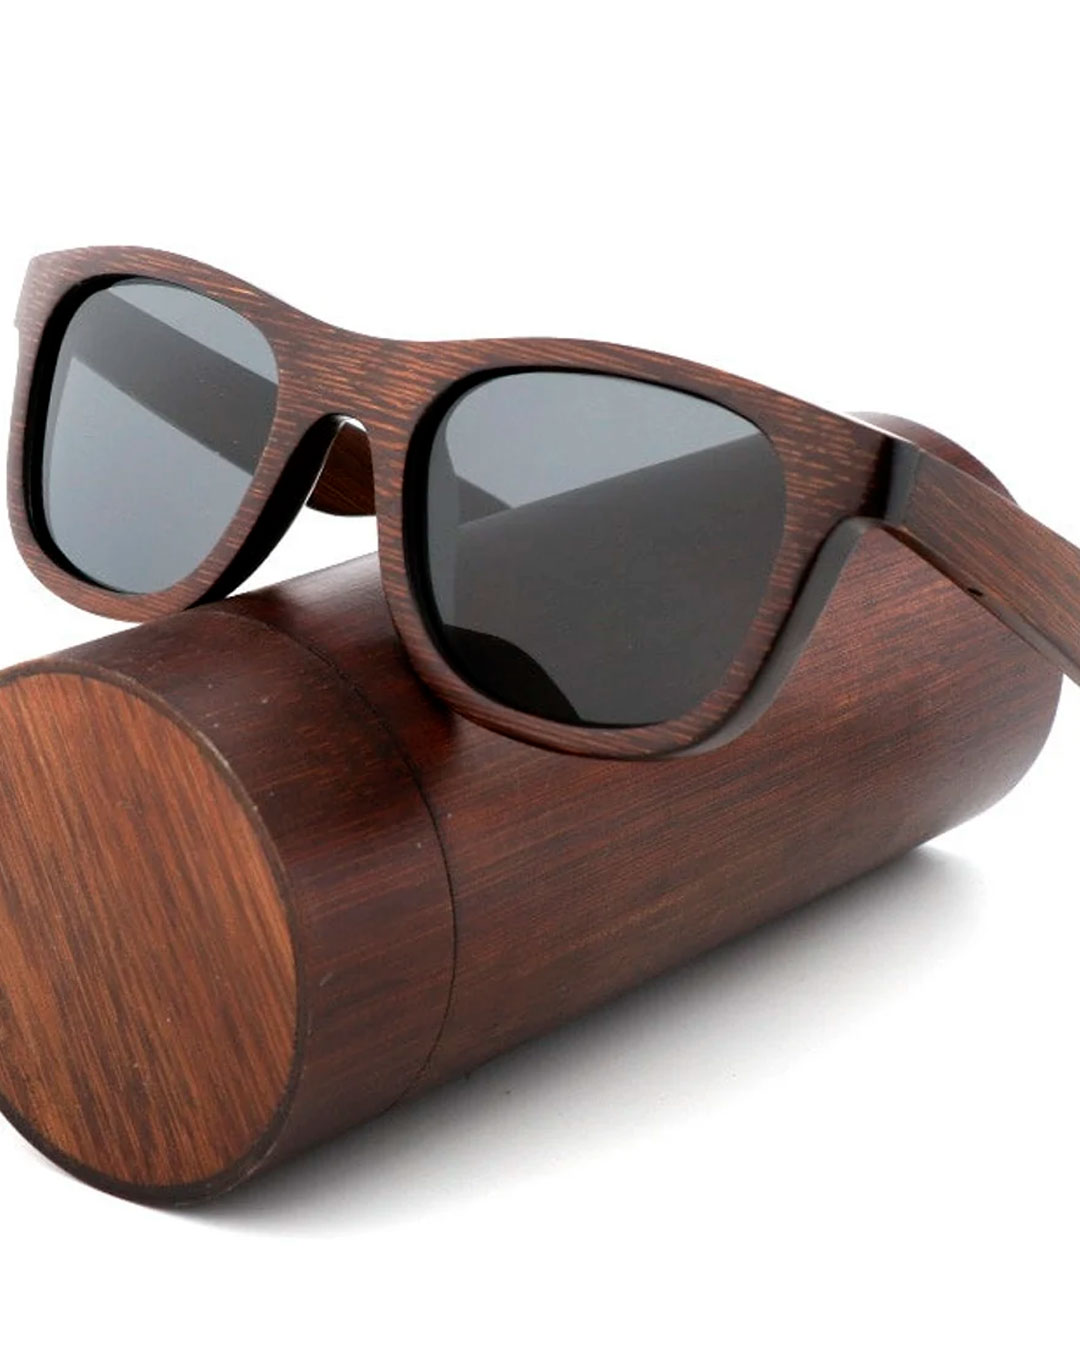 groomsmen-gift-sunglasses-box